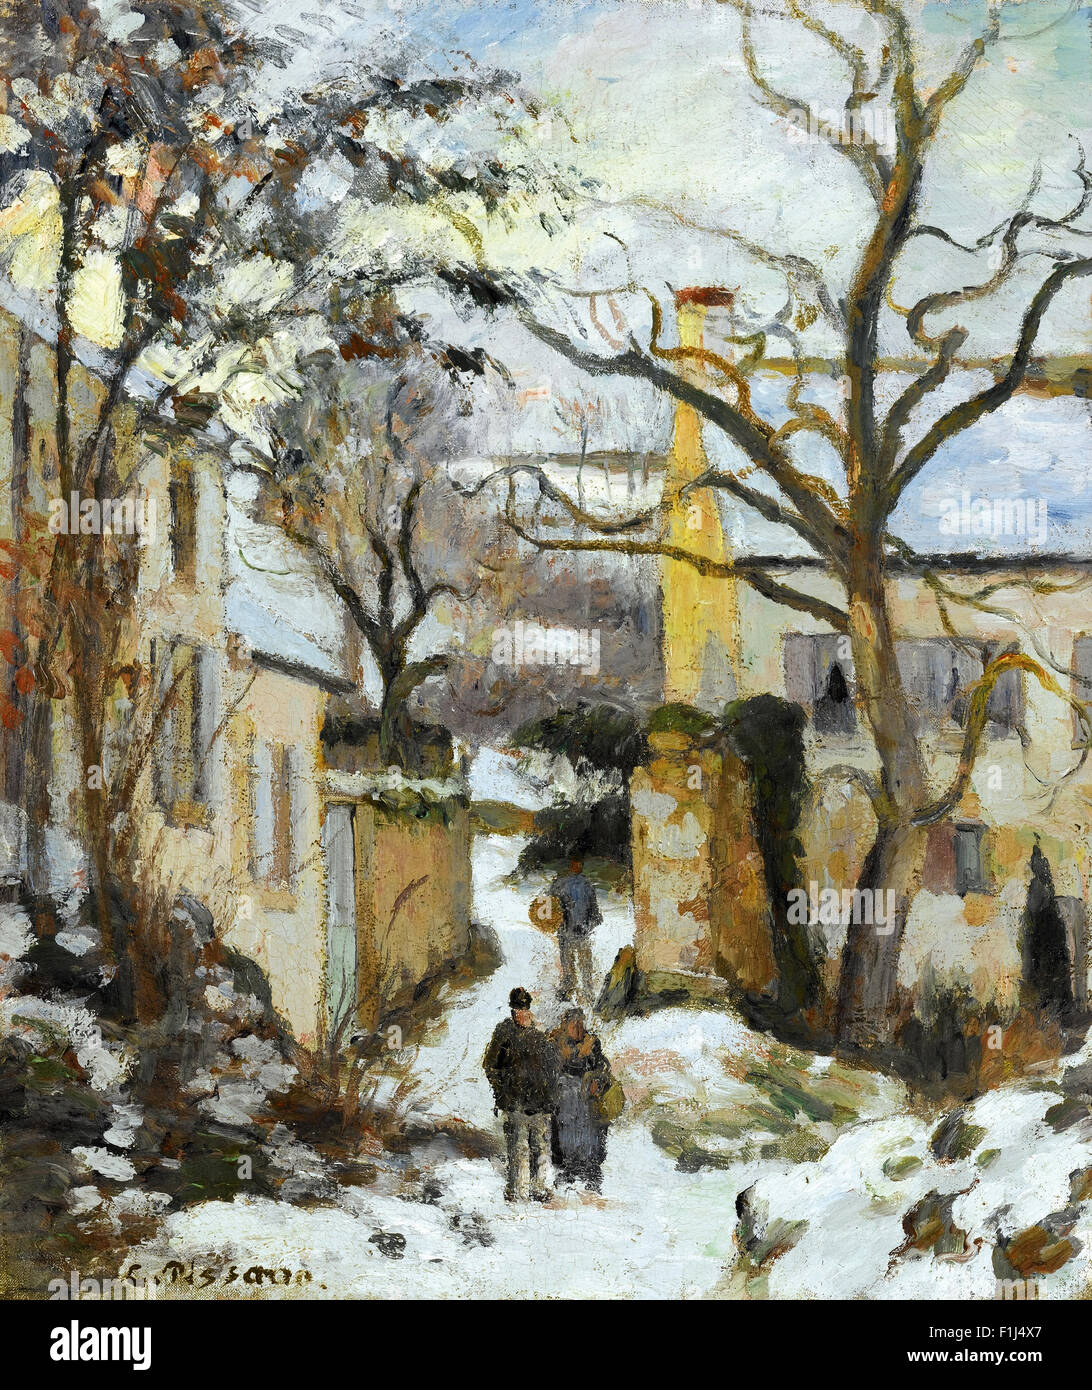 Camille Pissarro - La Maison Rondest sous la Neige, Pontoise Stock Photo